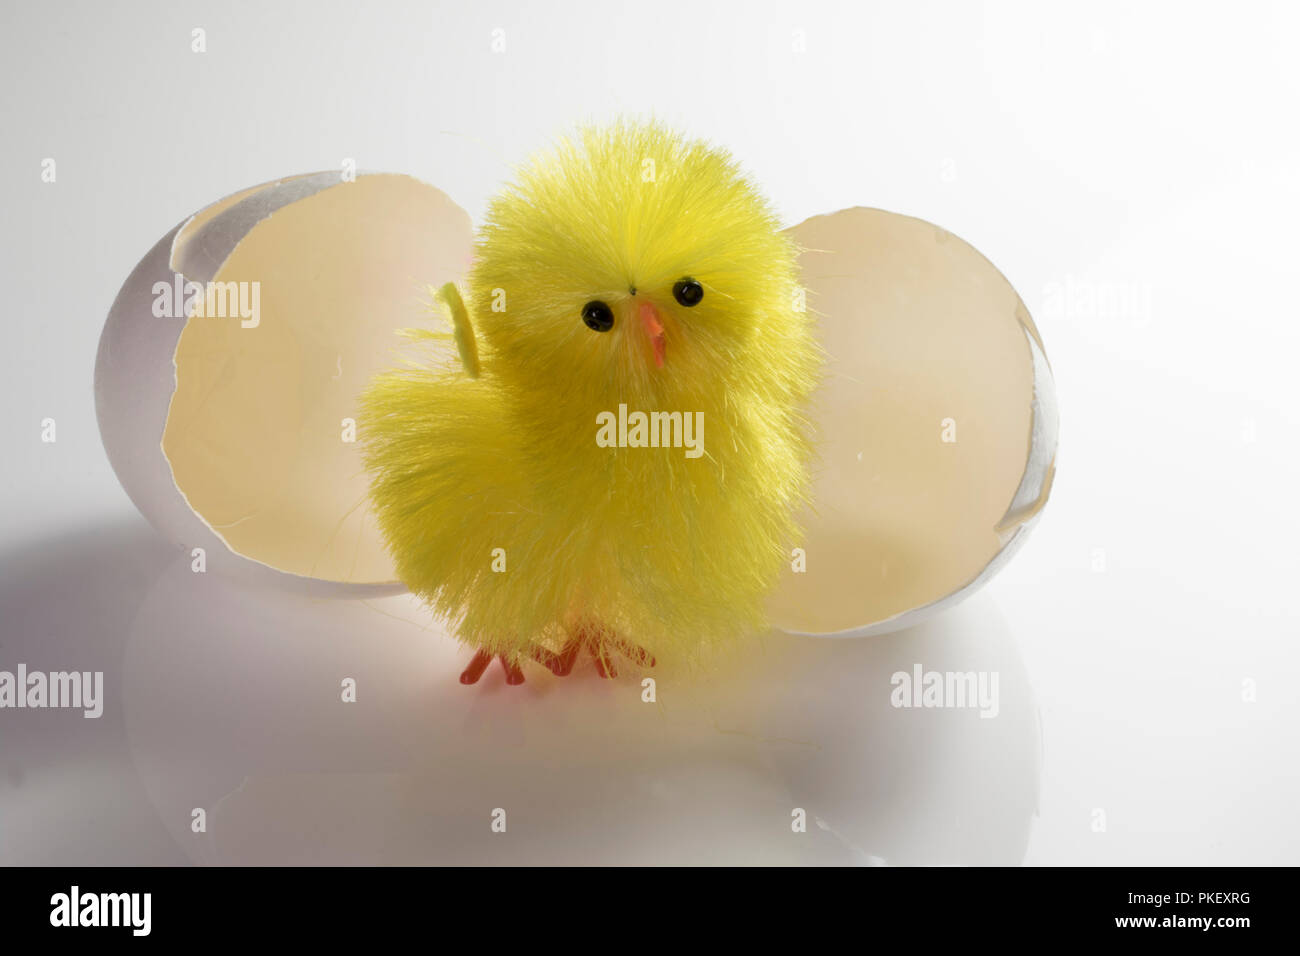 Baby chick und rissig Ei. Spielzeug vogel Schlüpfen aus dem Ei Shell  Stockfotografie - Alamy